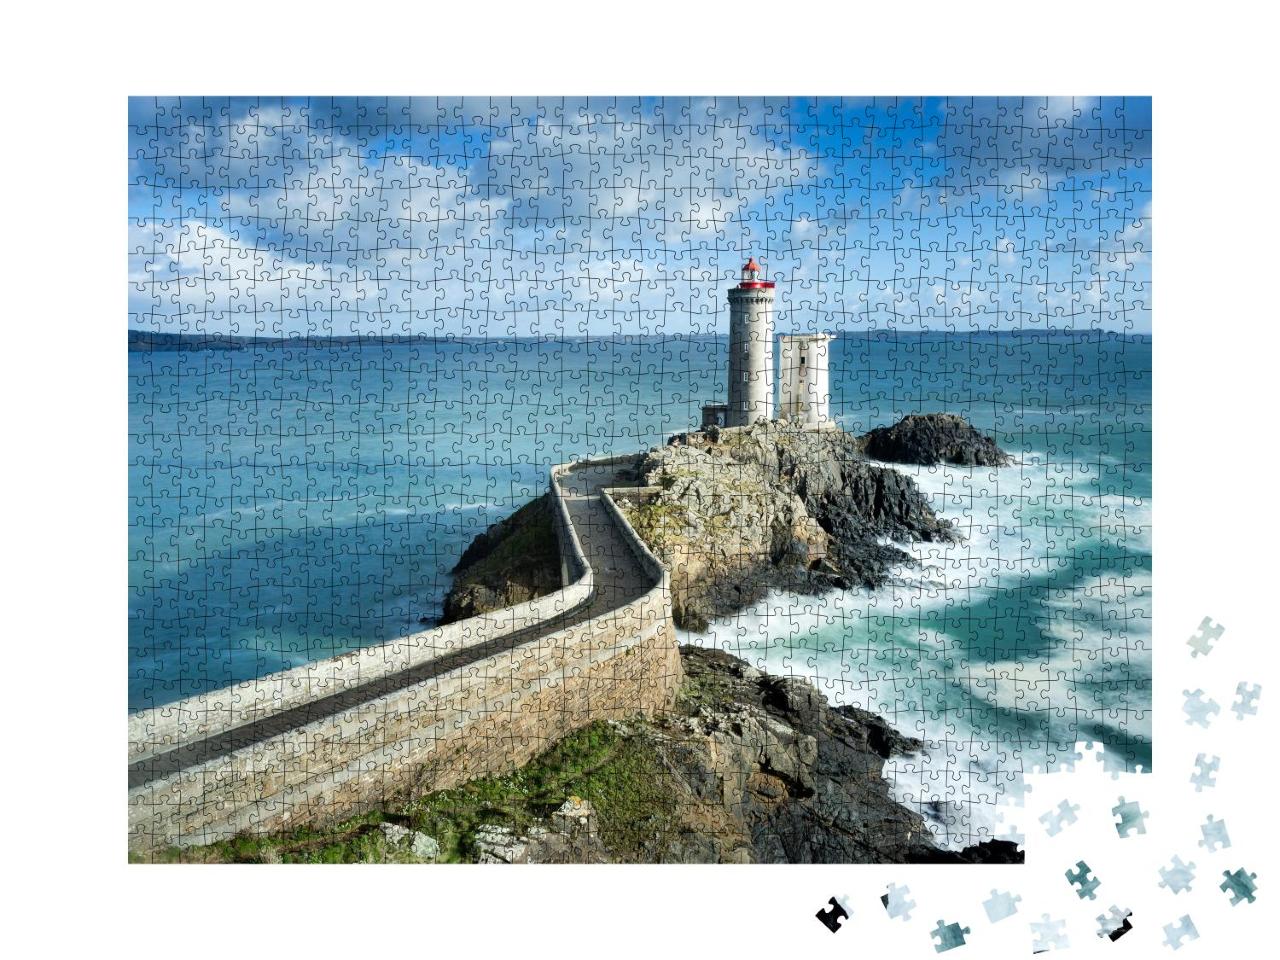 Puzzle 1000 Teile „Blick auf den Phare du petit minou in Plouzane, Bretagne, Frankreich“